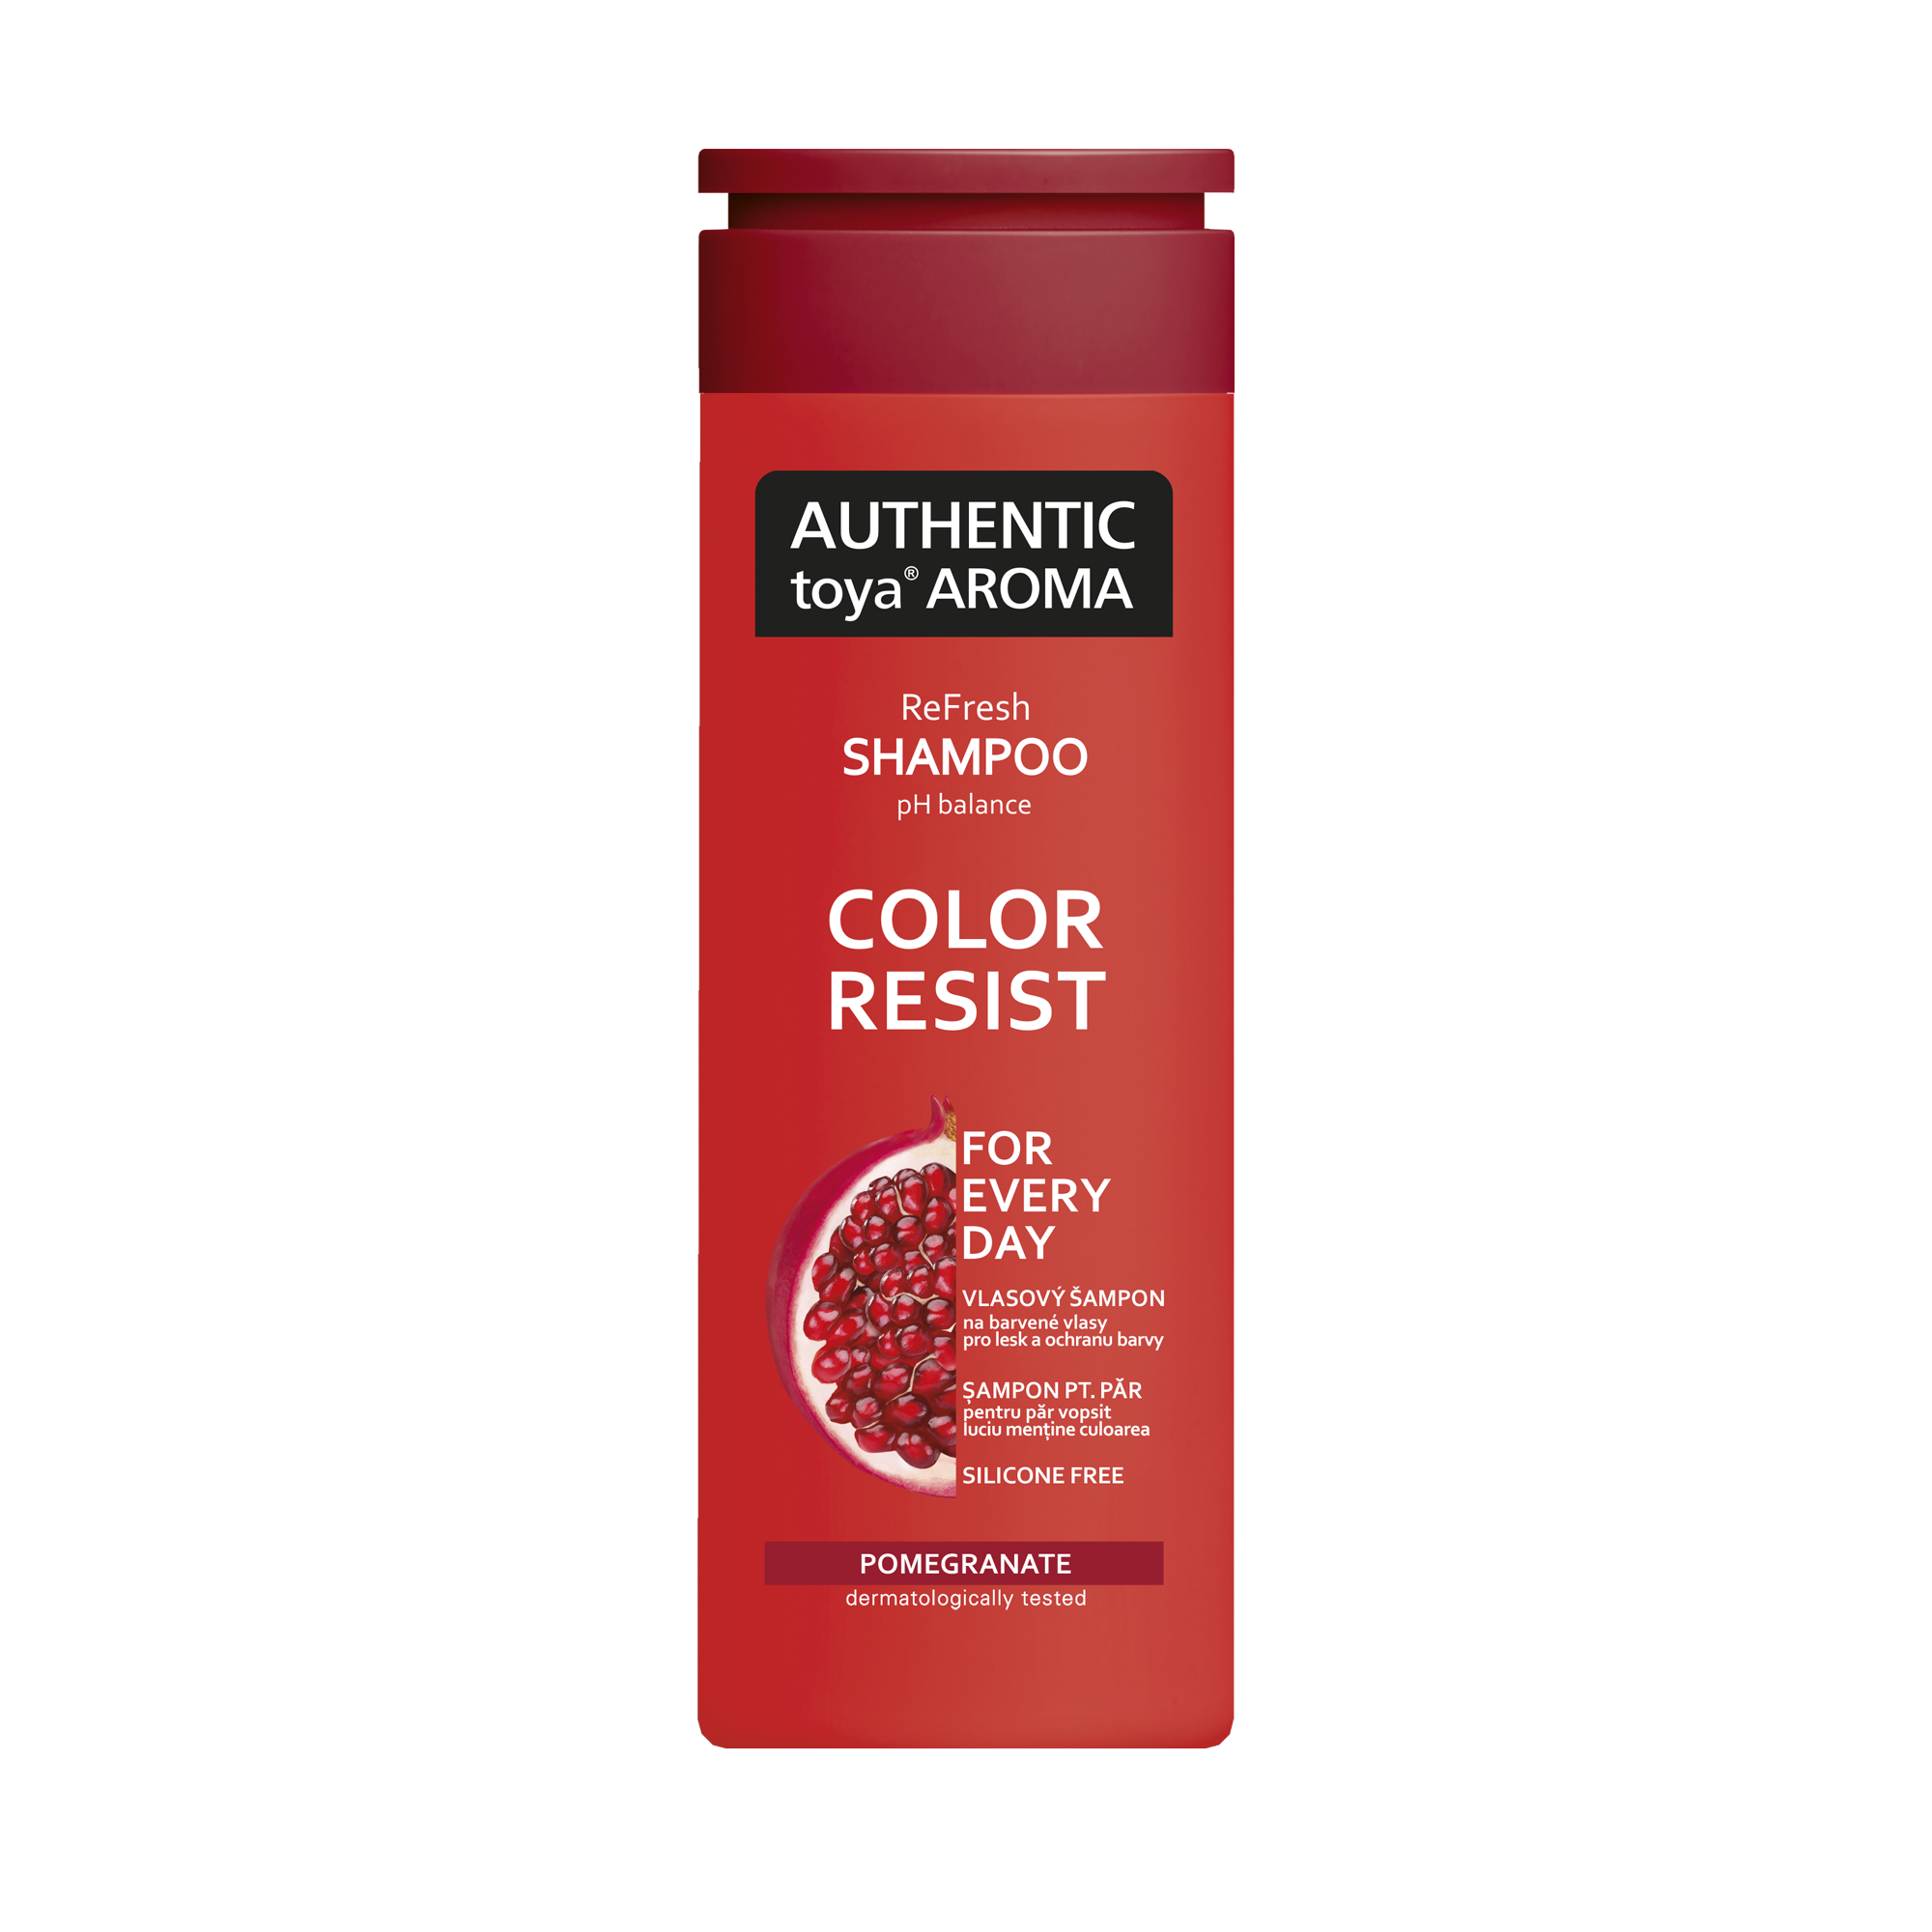 AUTHENTIC toya AROMA vlasový šampón Color Resist